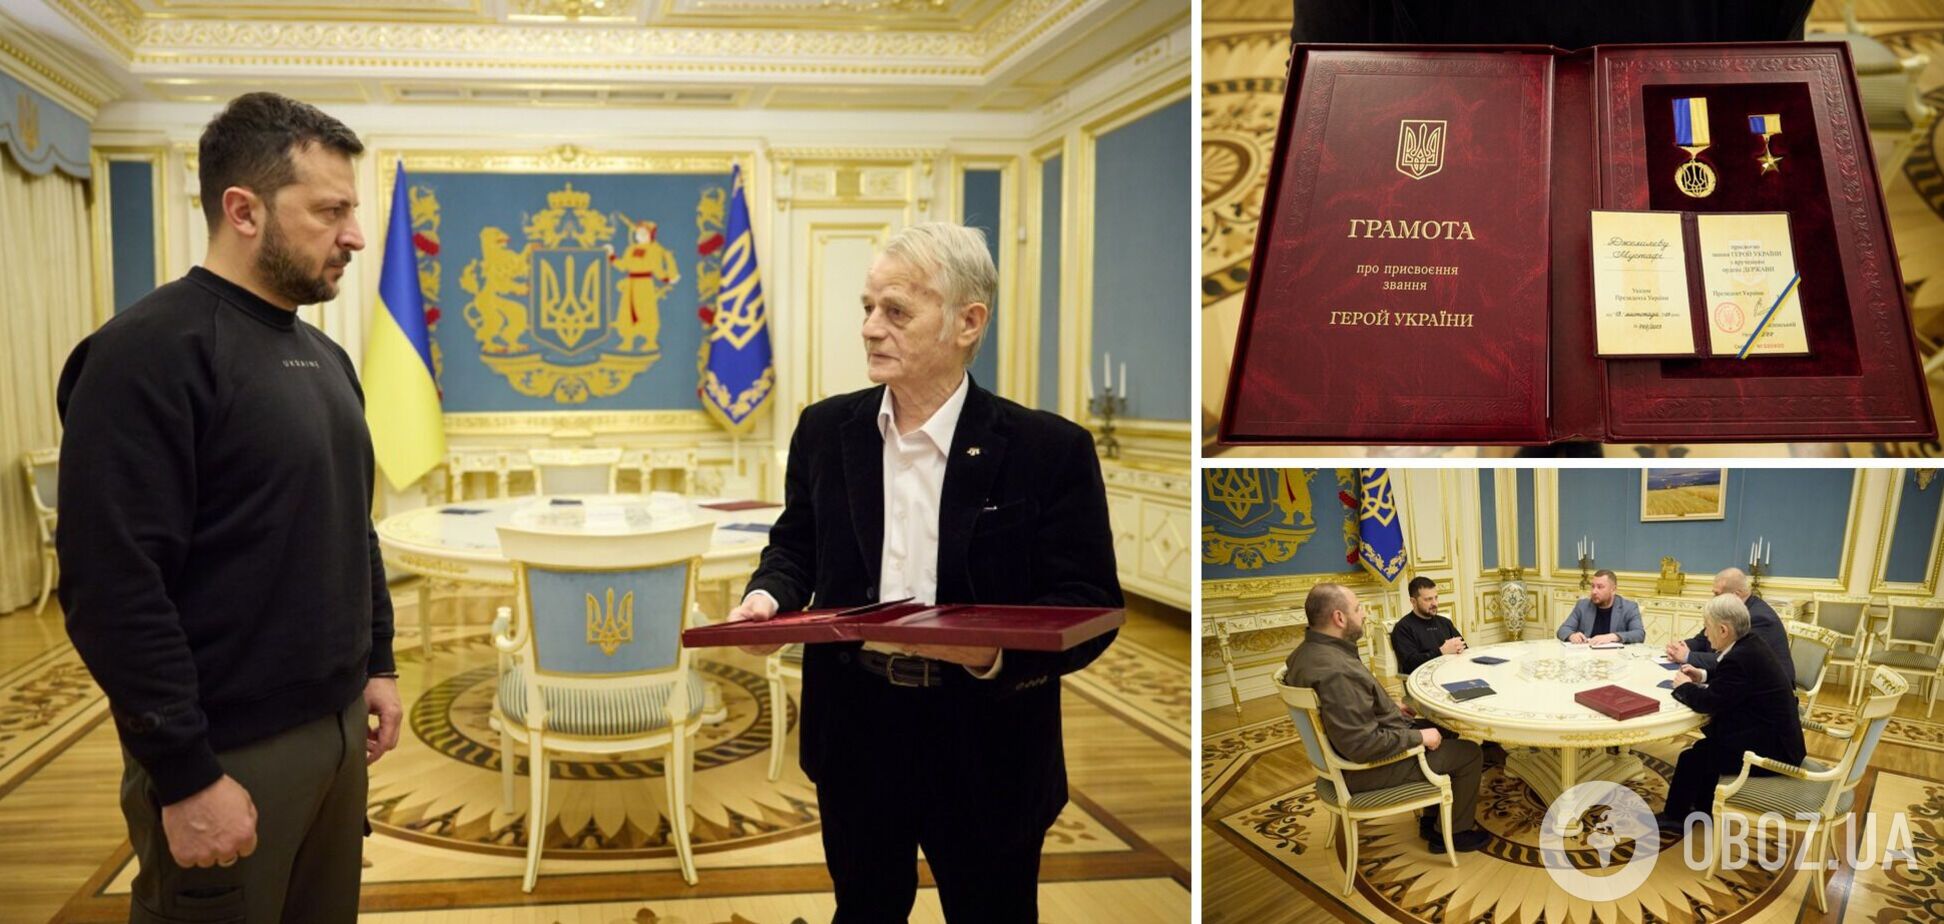 Зеленский отметил Мустафу Джемилева званием Героя Украины. Видео